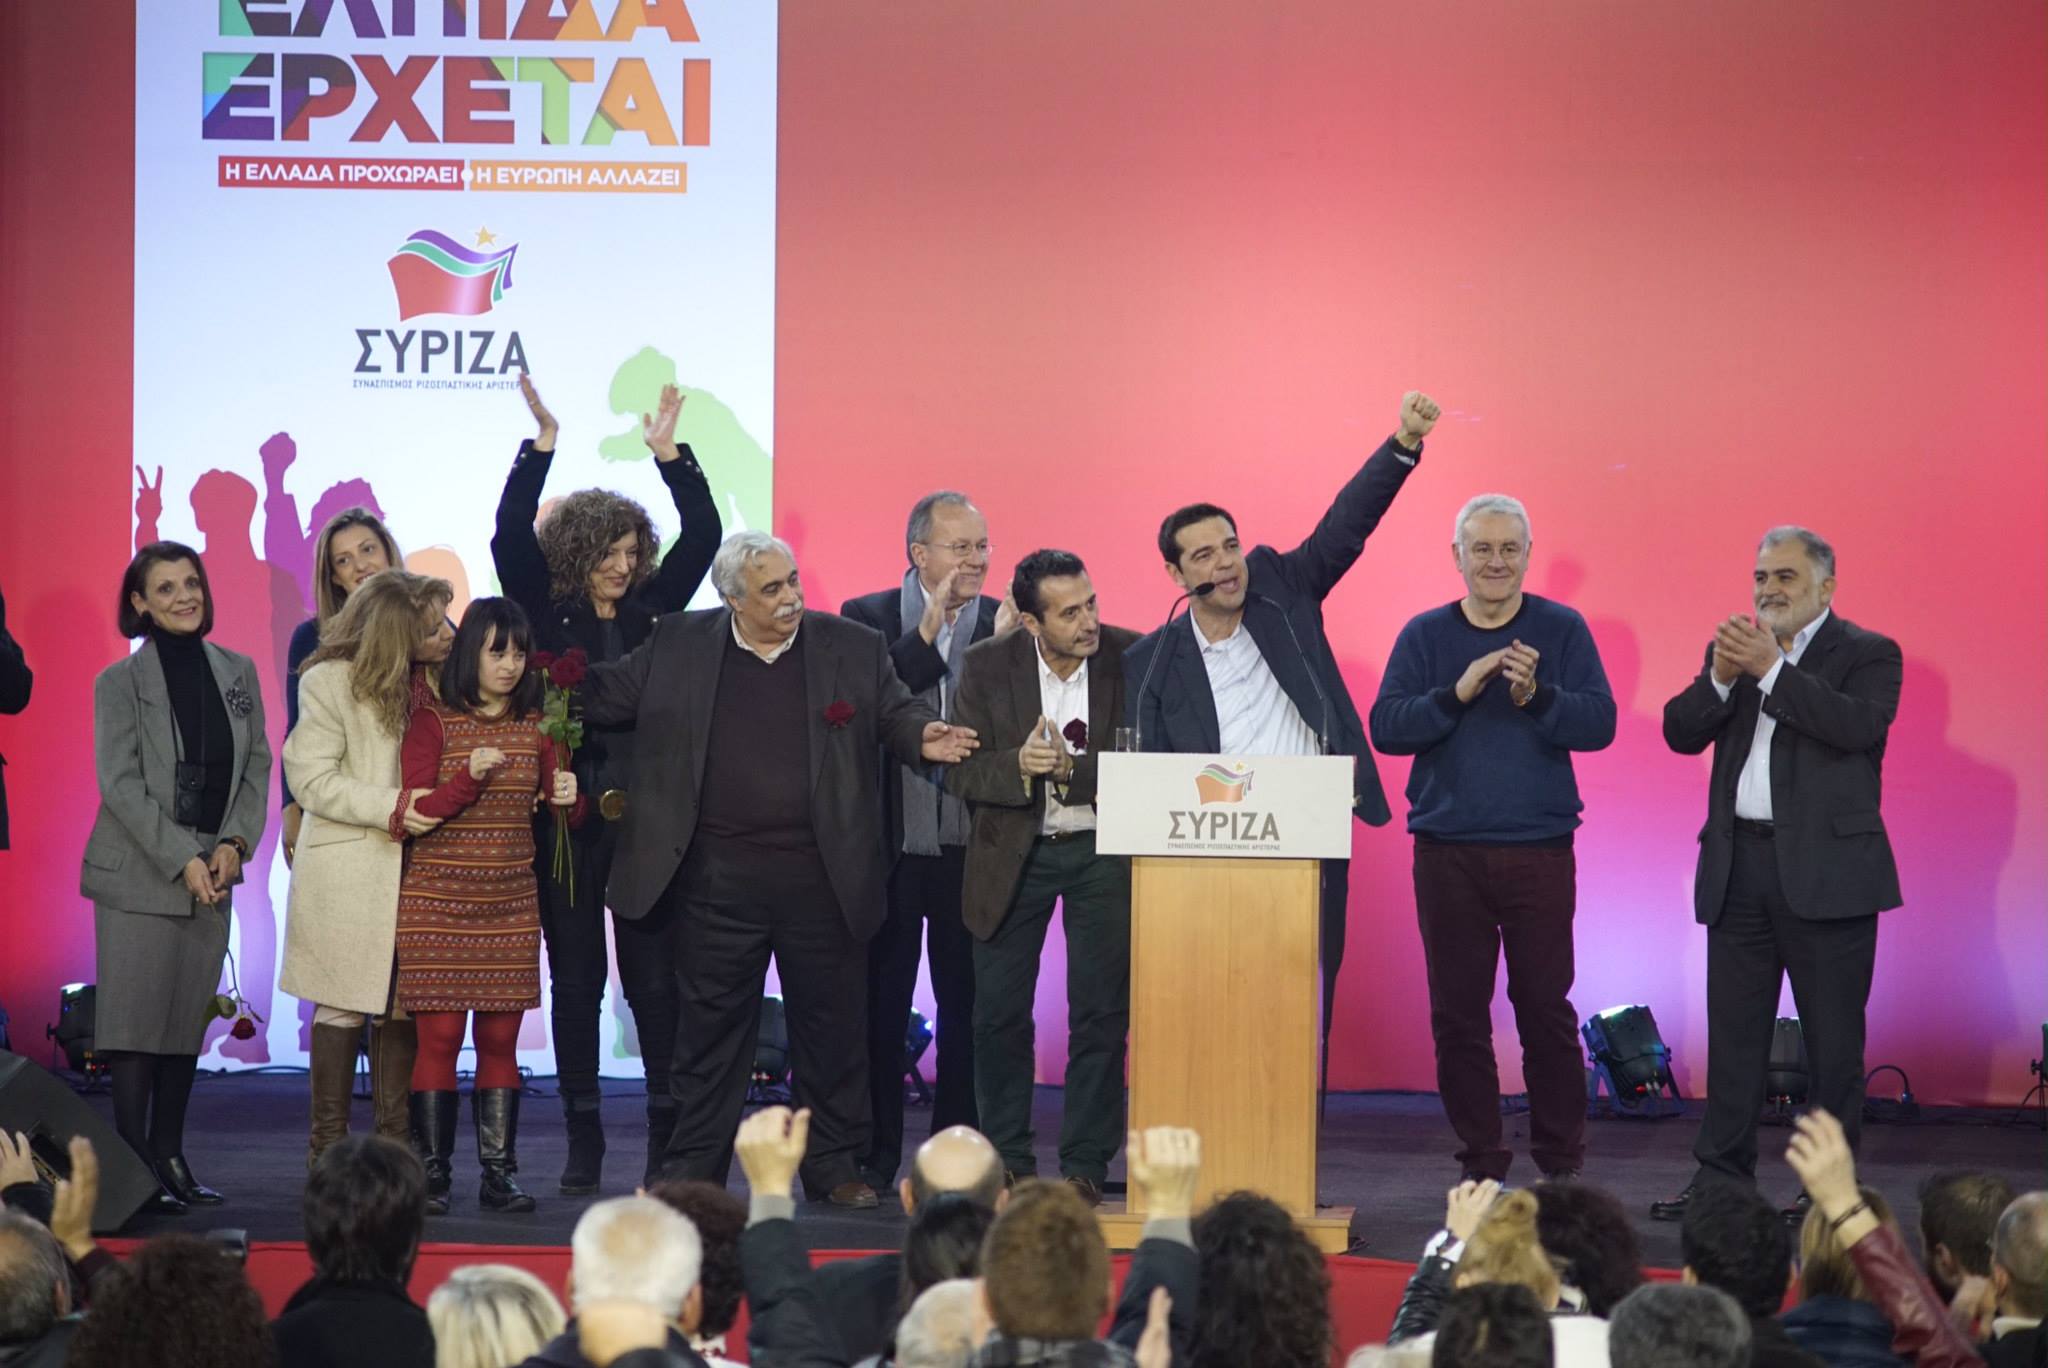 ΣΥΡΙΖΑ Αχαΐας: Πρωτοφανής συγκέντρωση του ΣΥΡΙΖΑ στην Πάτρα με ομιλητή τον Αλέξη Τσίπρα